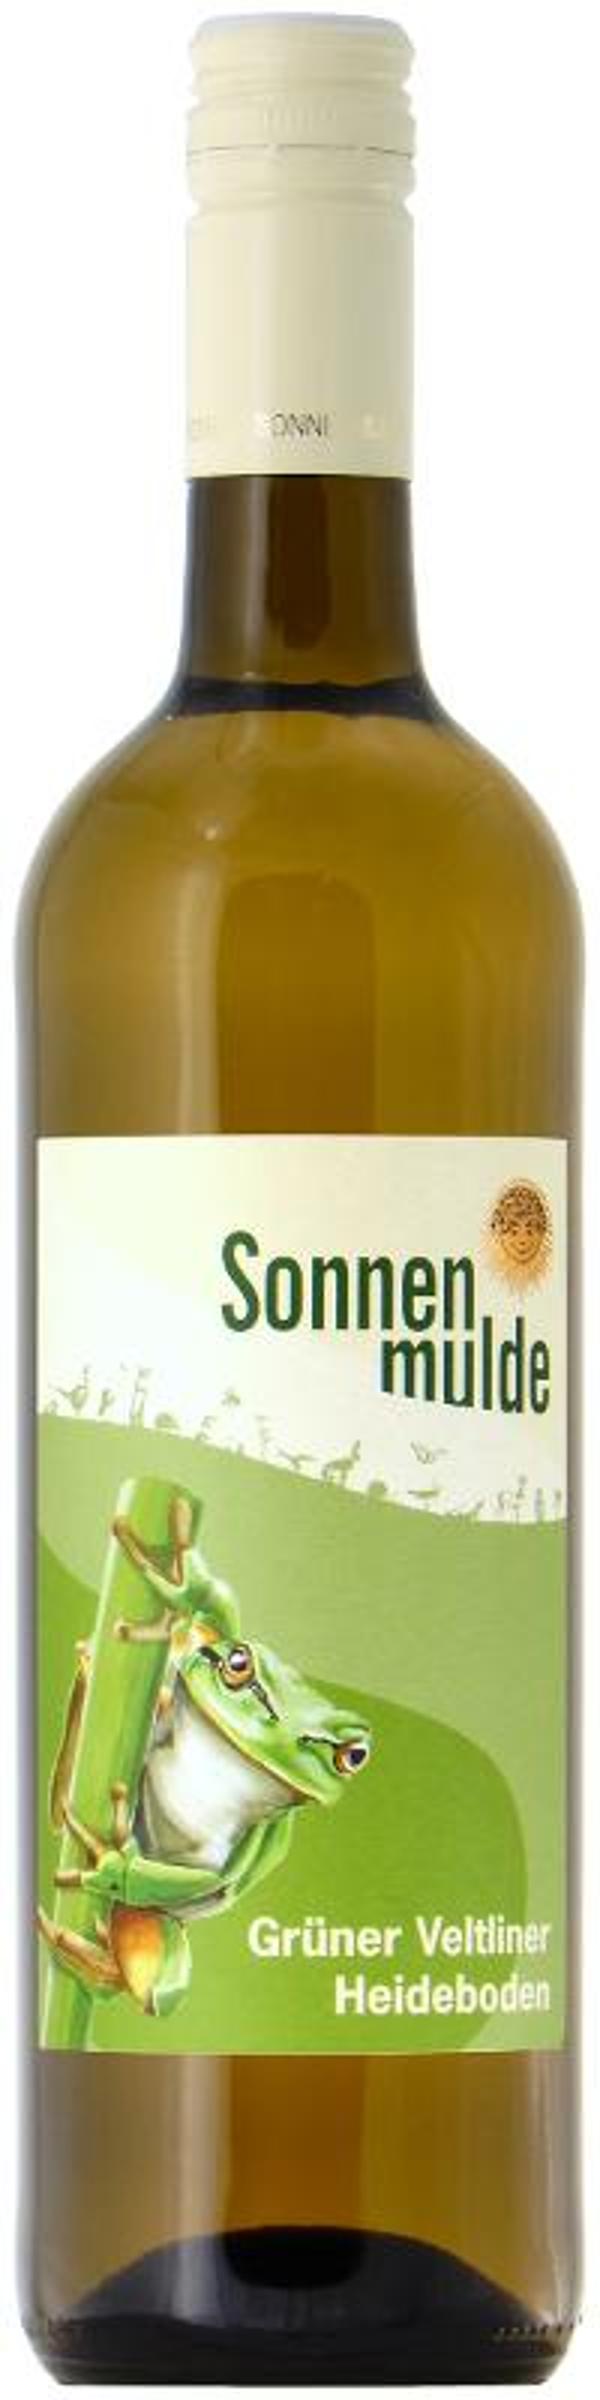 Produktfoto zu Grüner Veltiner Heideboden weiß 0,75 l Weingut Sonnenmulde